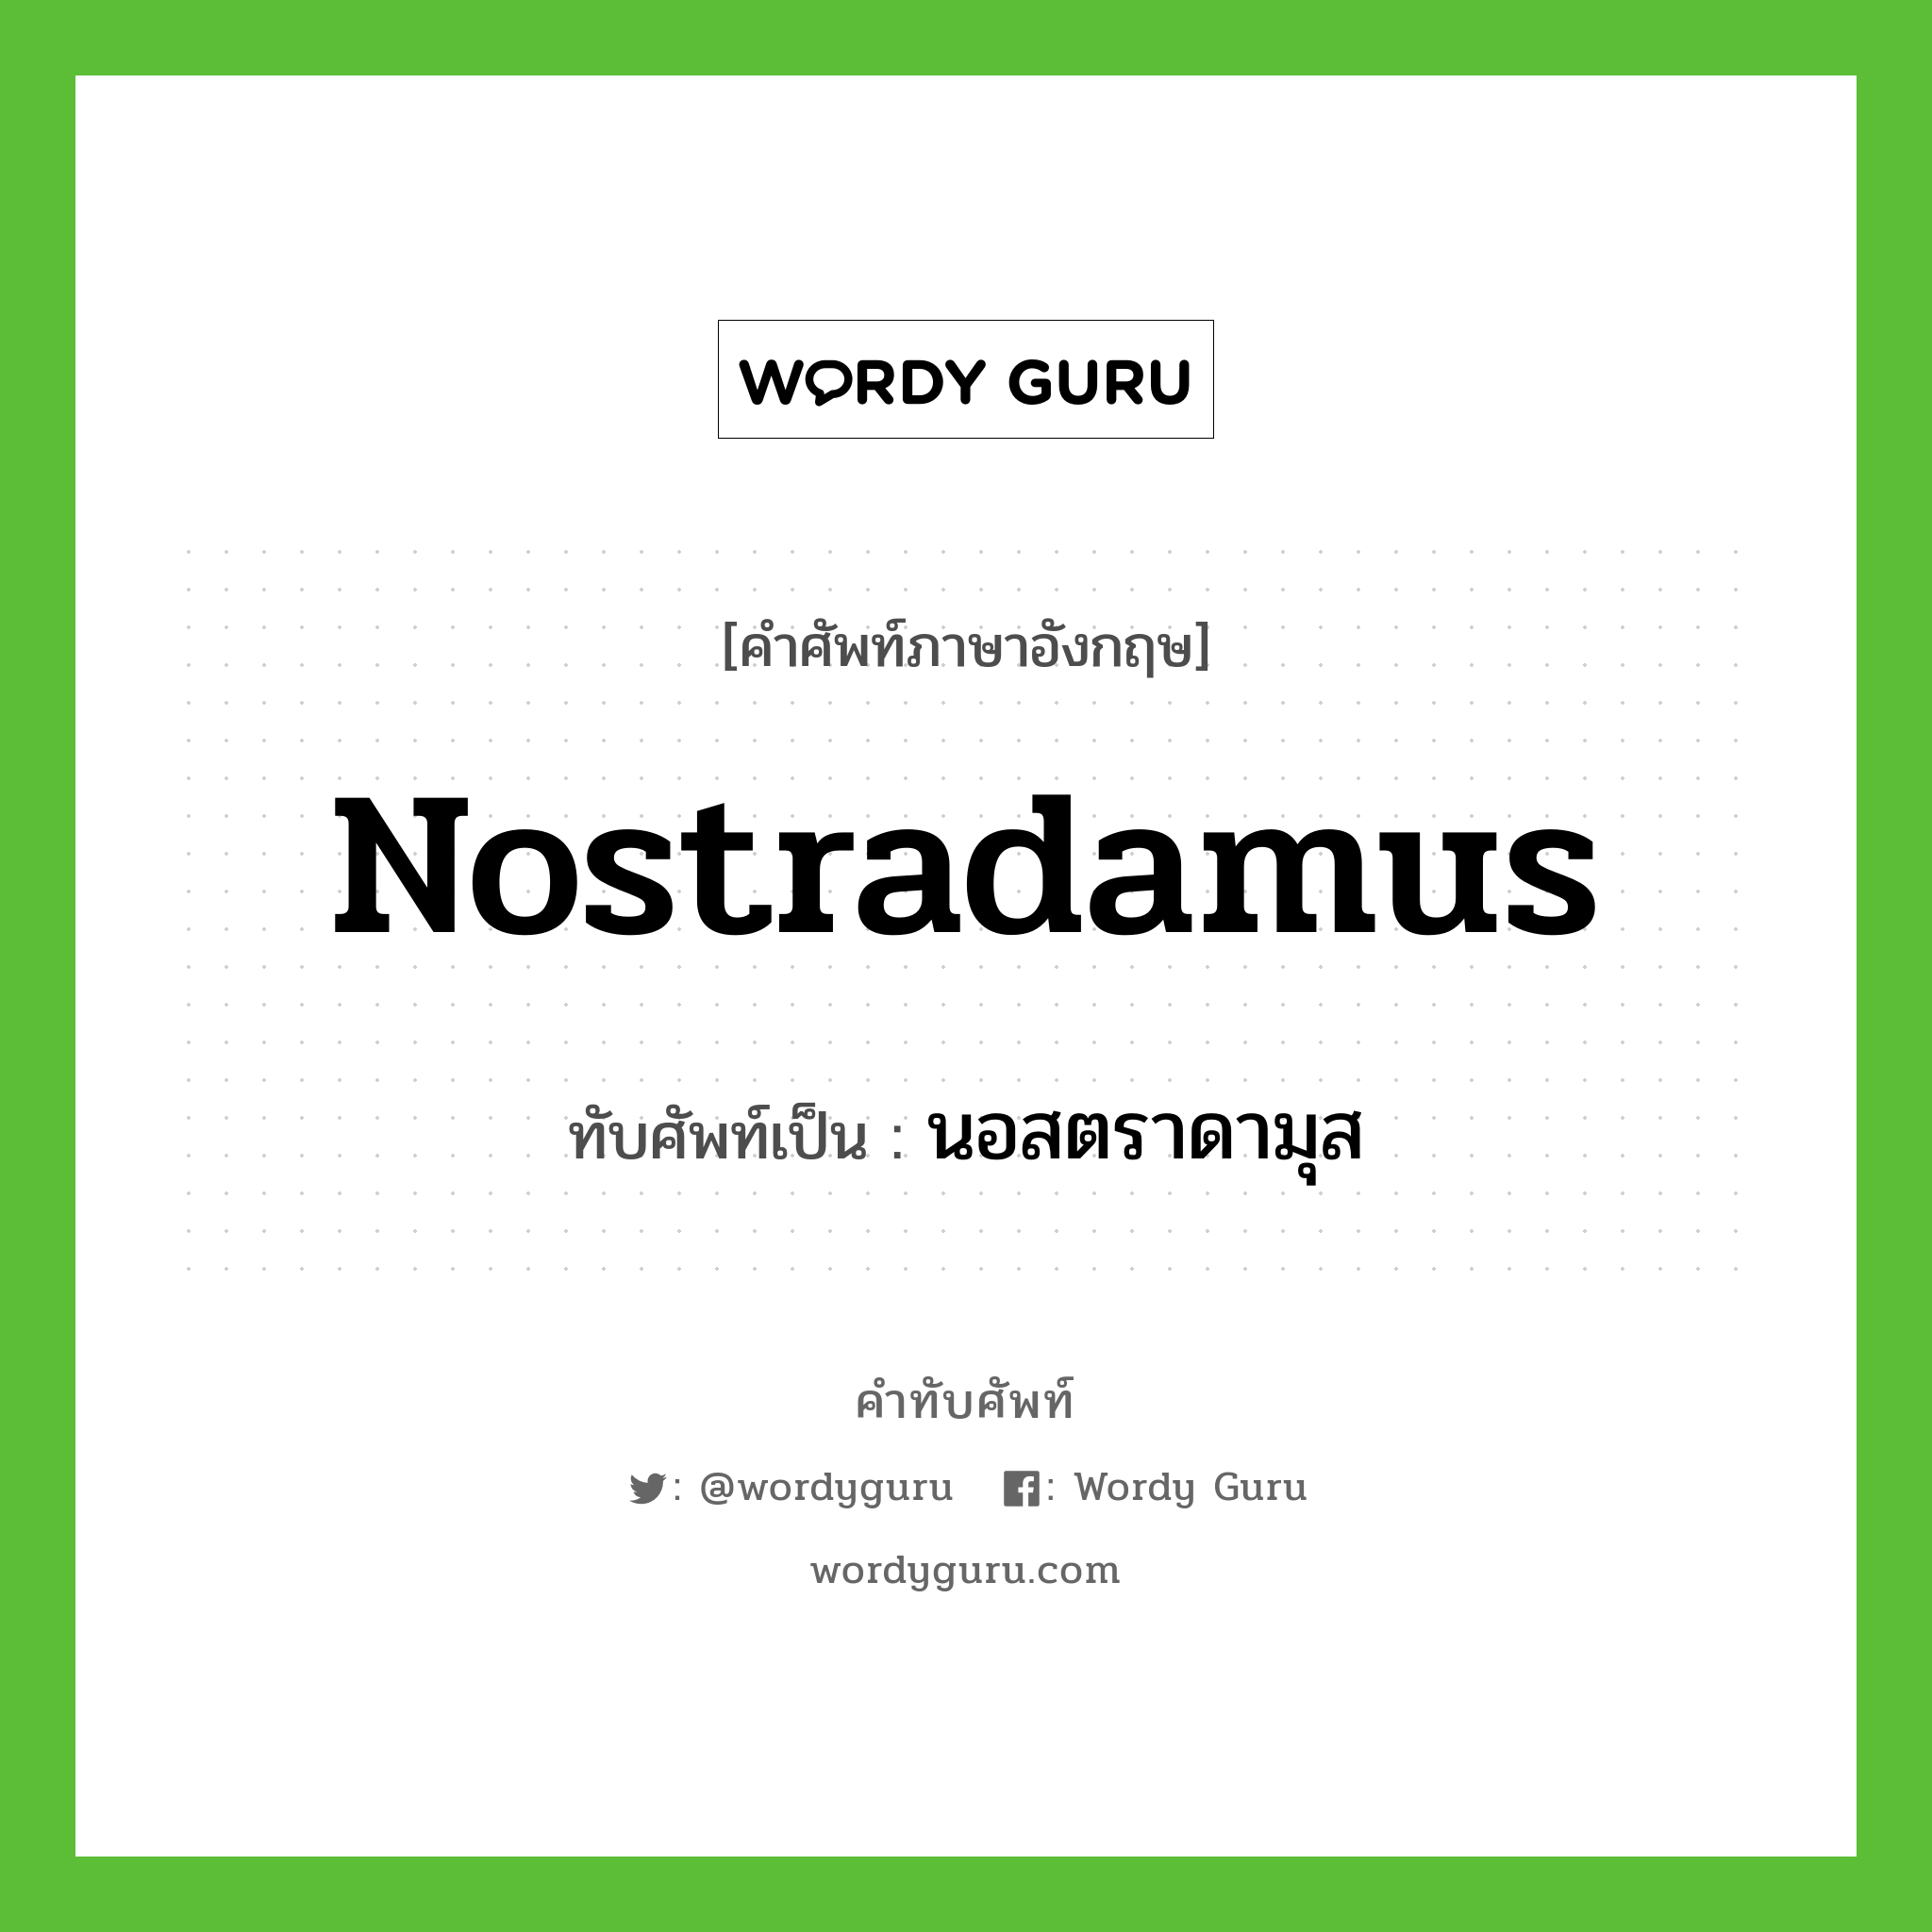 Nostradamus เขียนเป็นคำไทยว่าอะไร?, คำศัพท์ภาษาอังกฤษ Nostradamus ทับศัพท์เป็น นอสตราดามุส